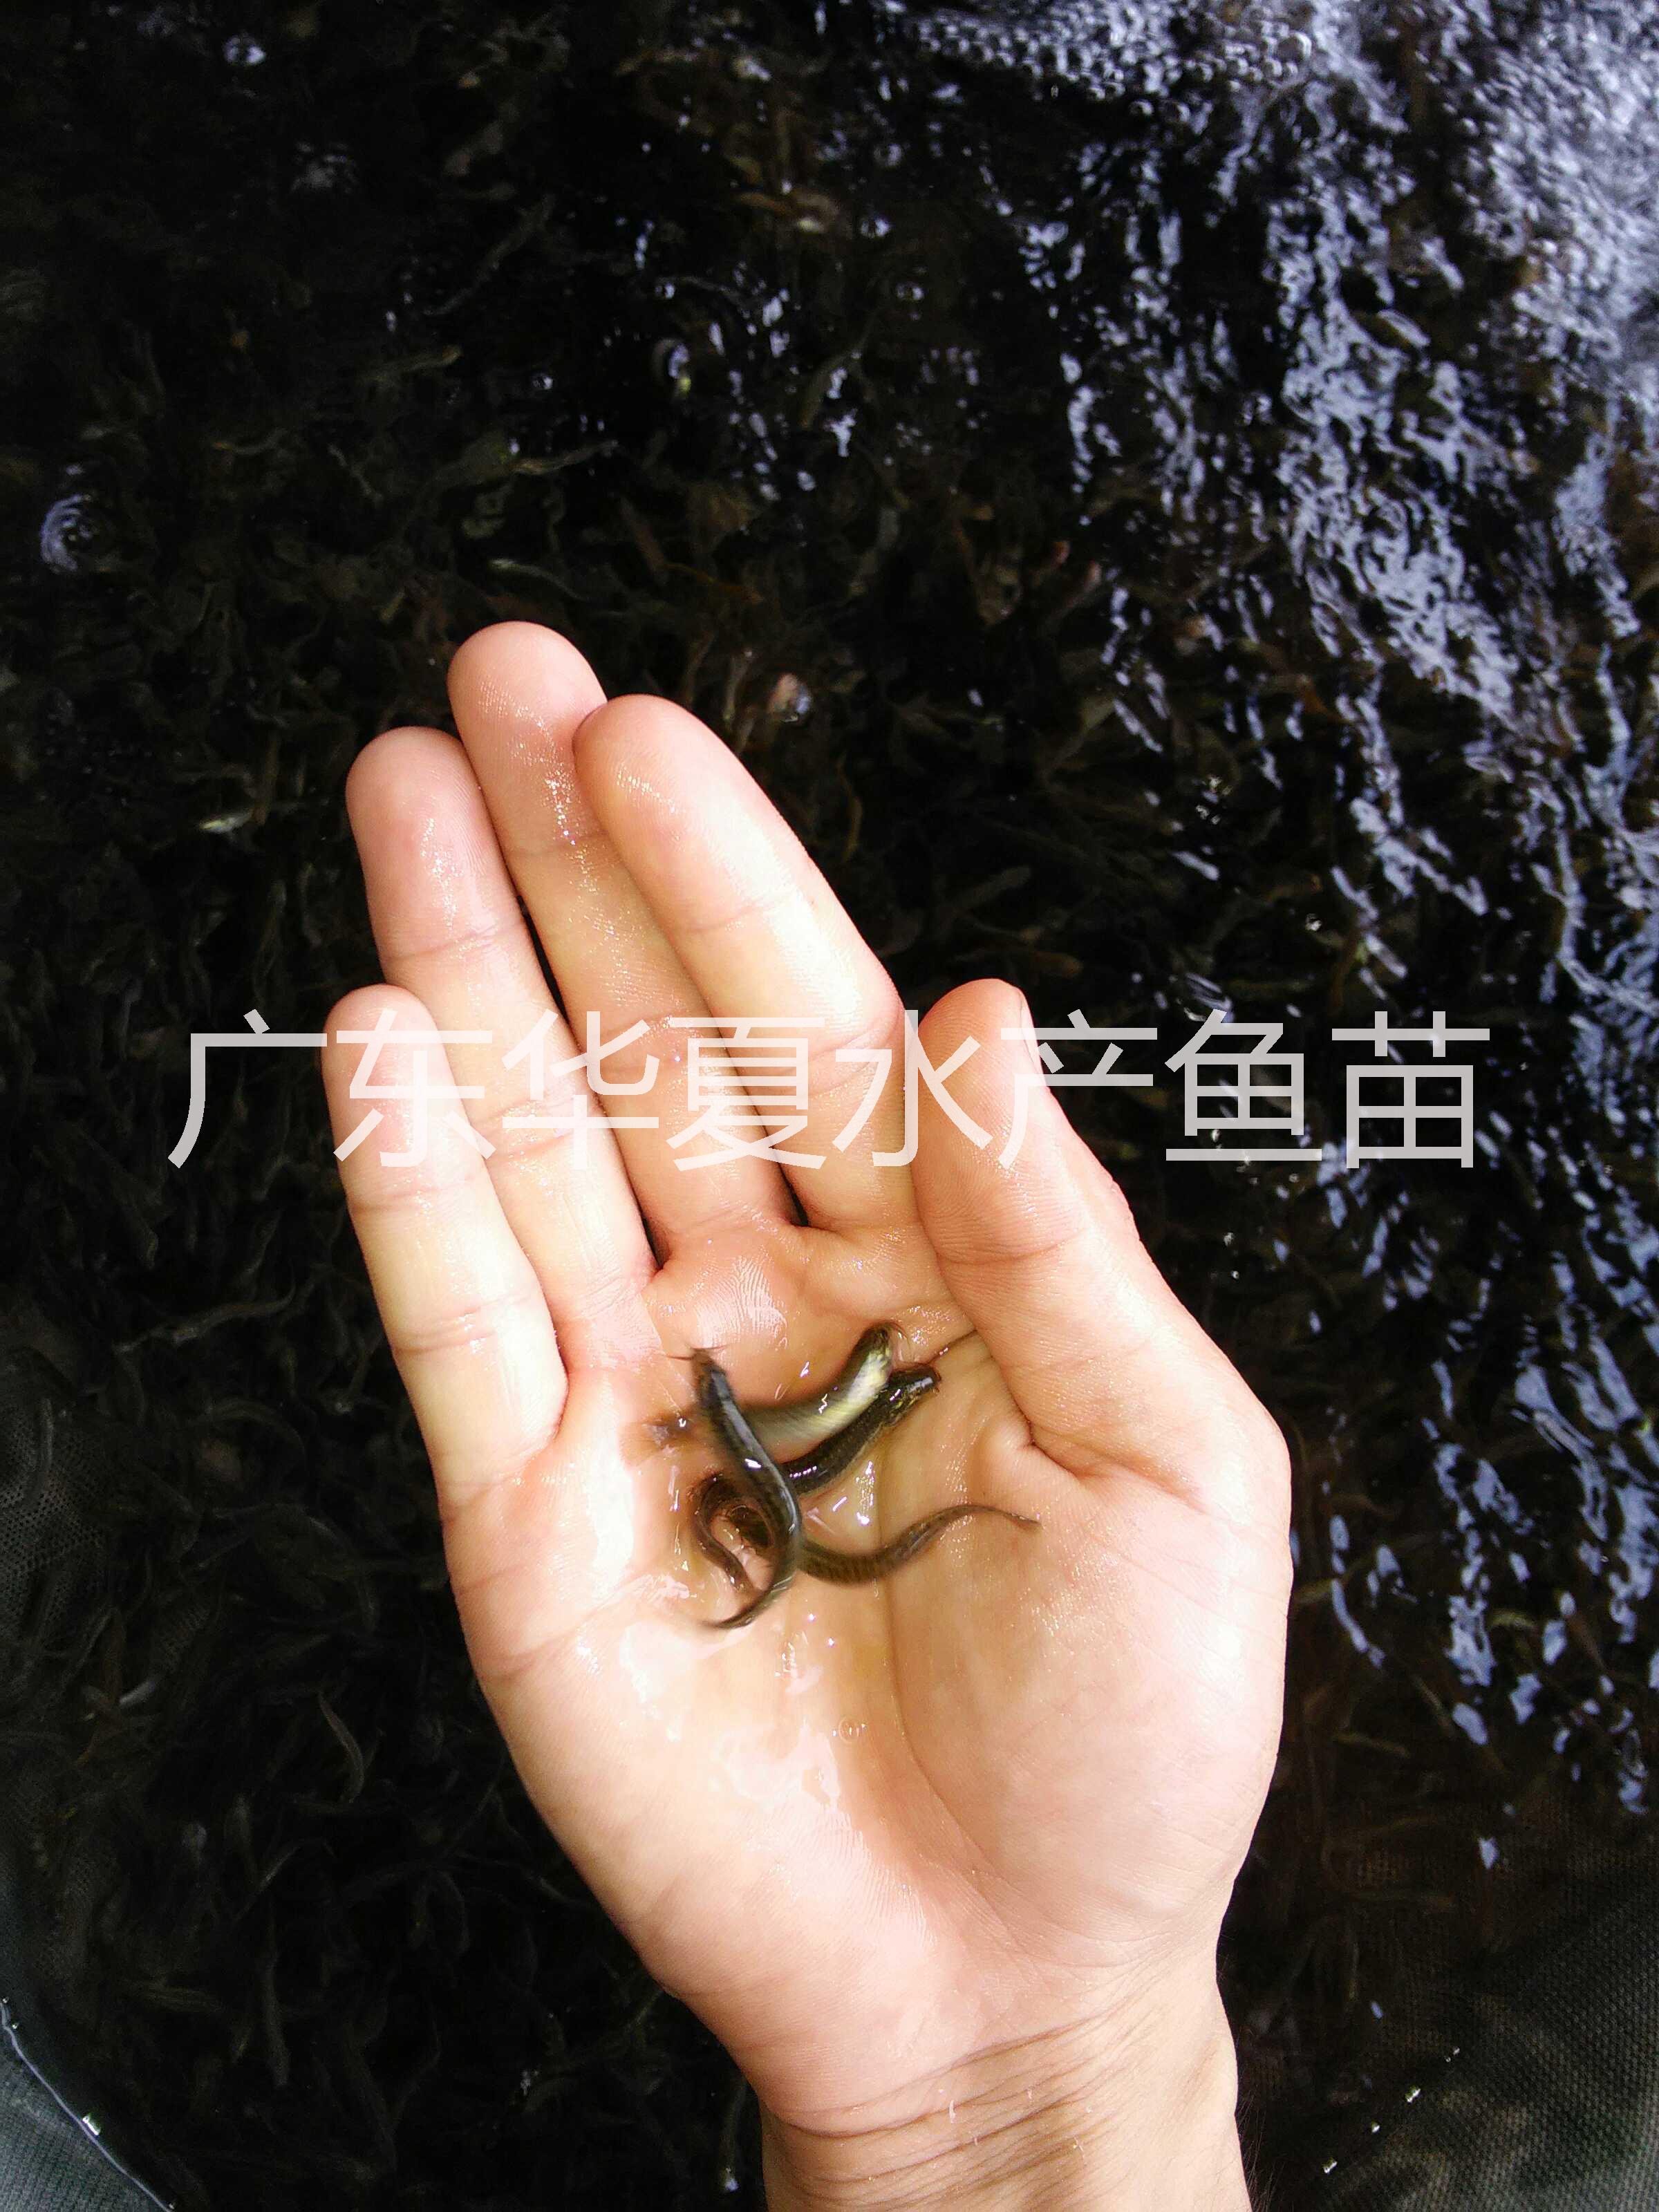 供应用于鱼苗的常年供应台正宗台湾泥鳅优质鱼苗图片